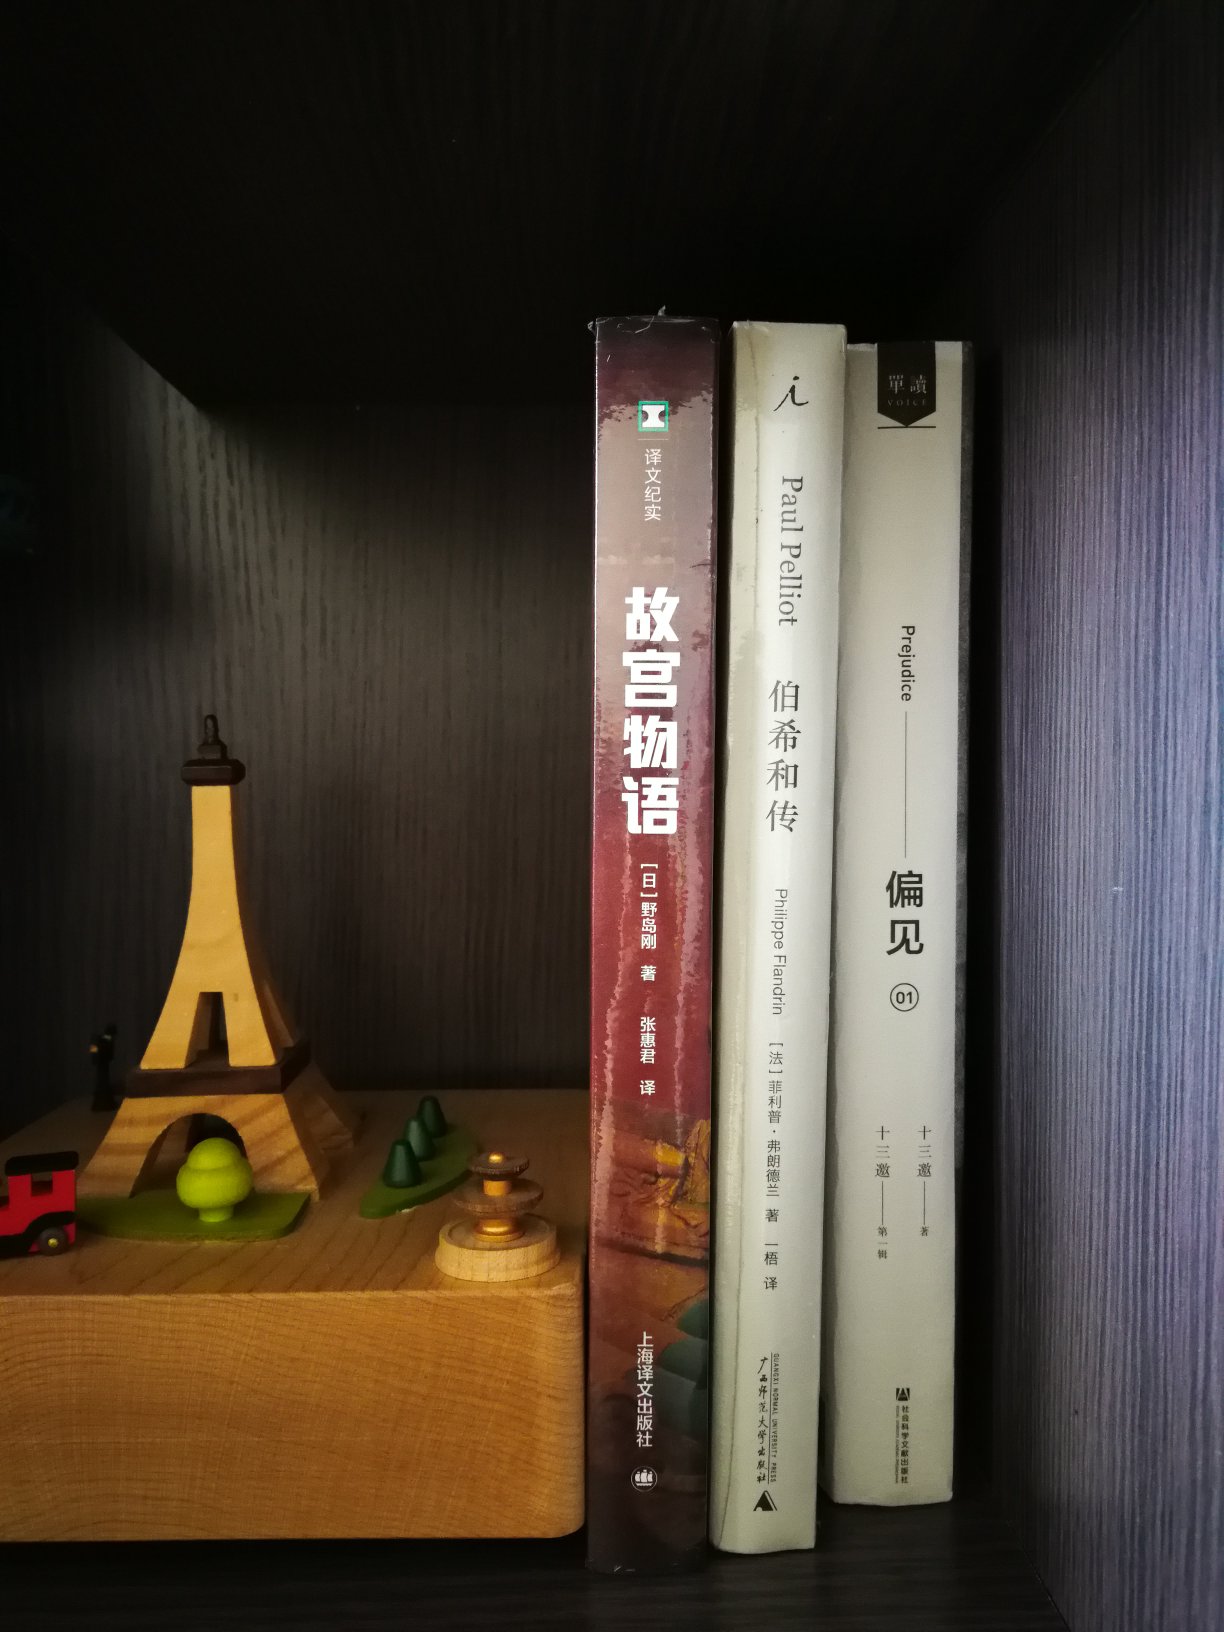 每年的618都是囤书的好时候。上海译文的译文纪实系列都很好。价格很好。